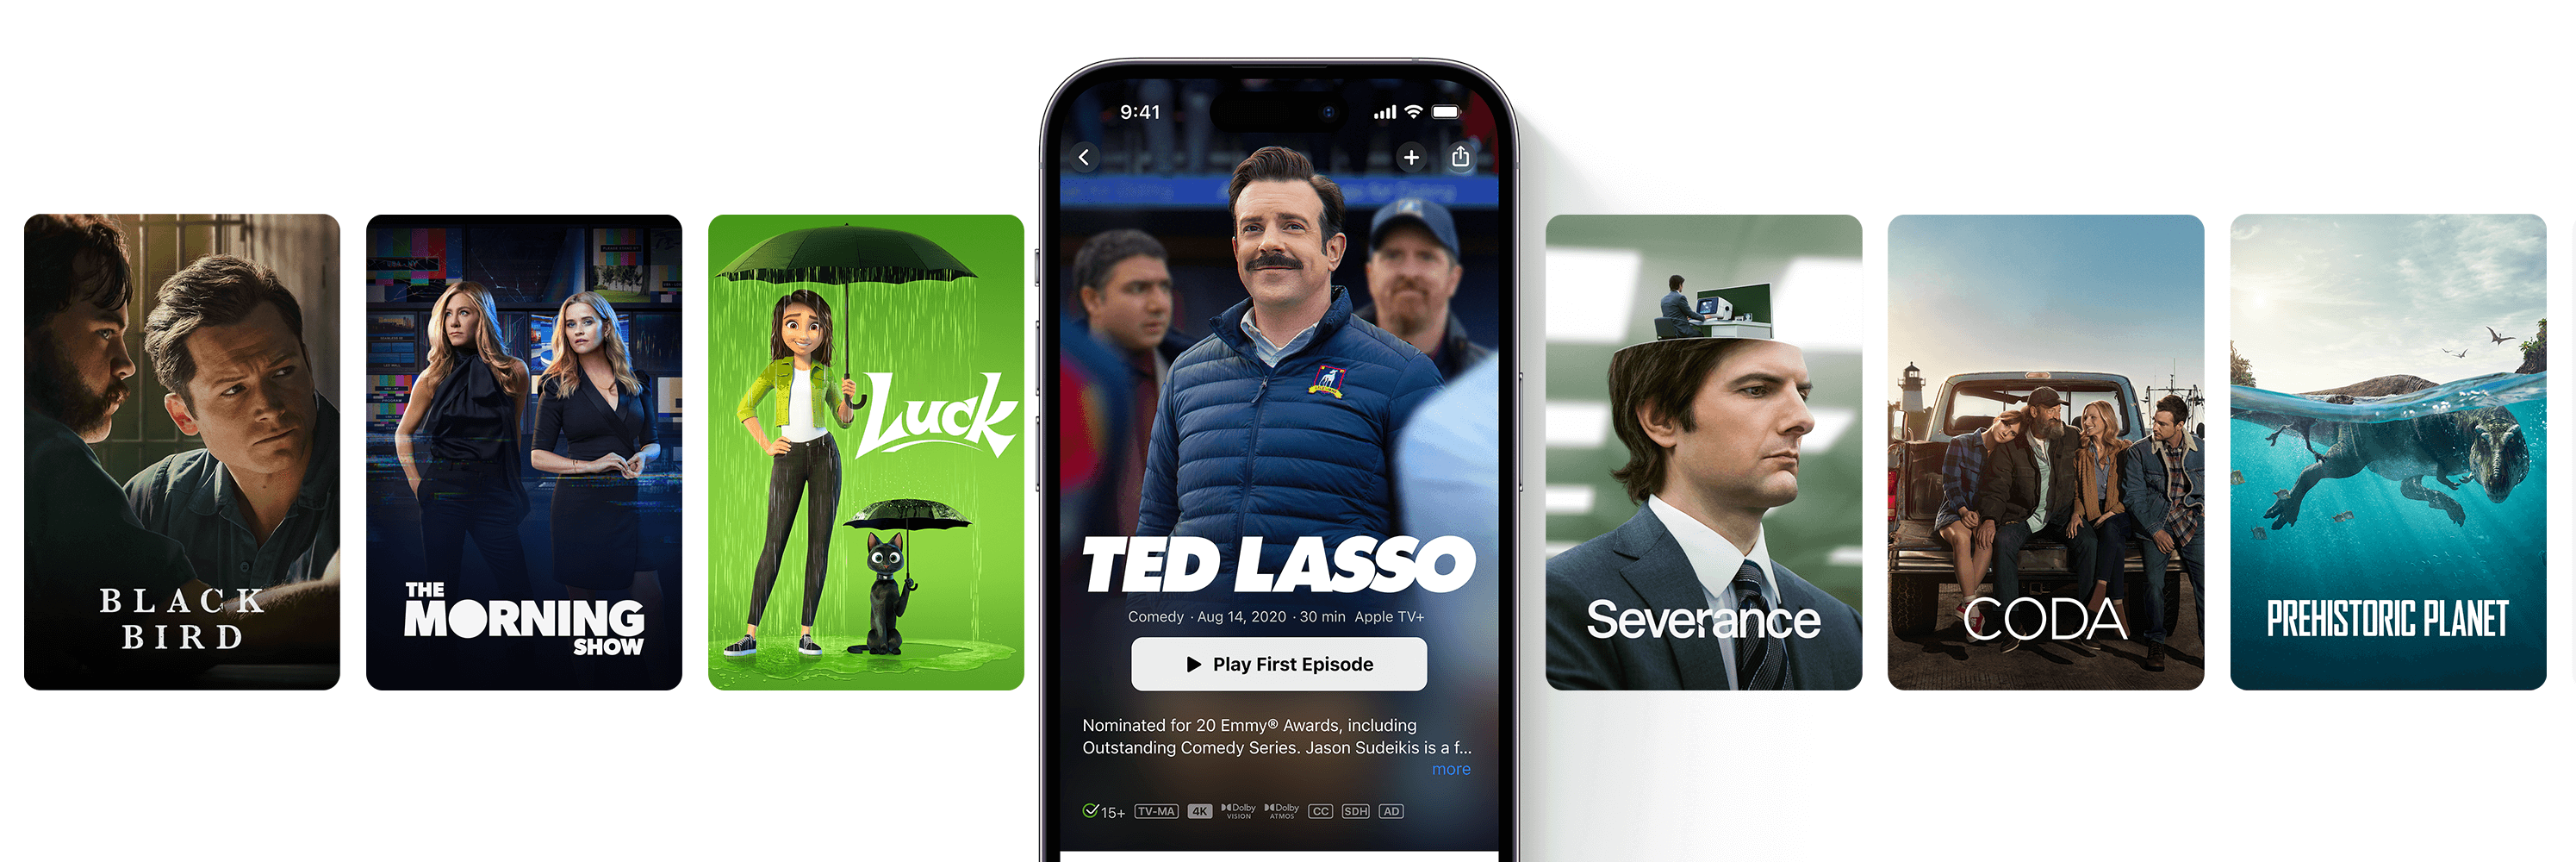 Un banner de Apple TV+ Originals como Ted Lasso y Severance.